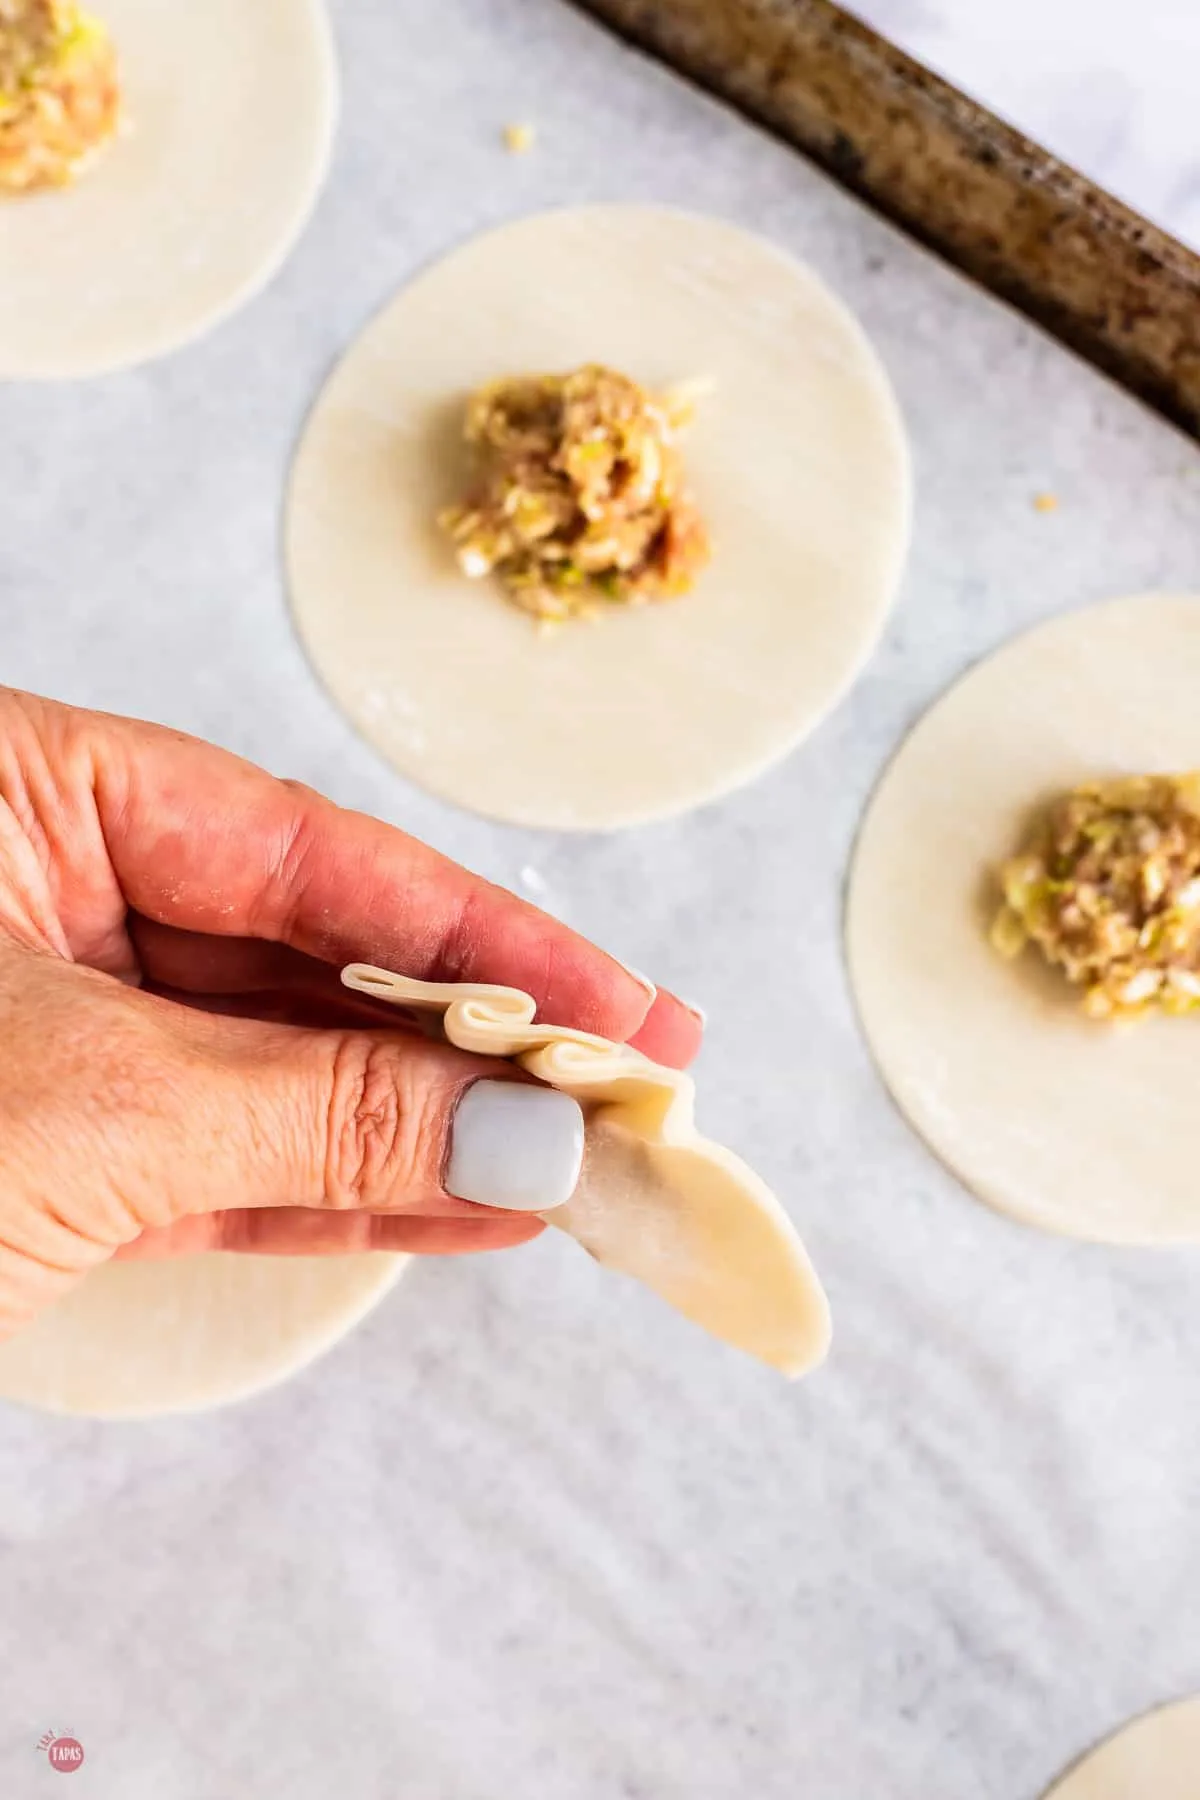 pleats in dumpling dough